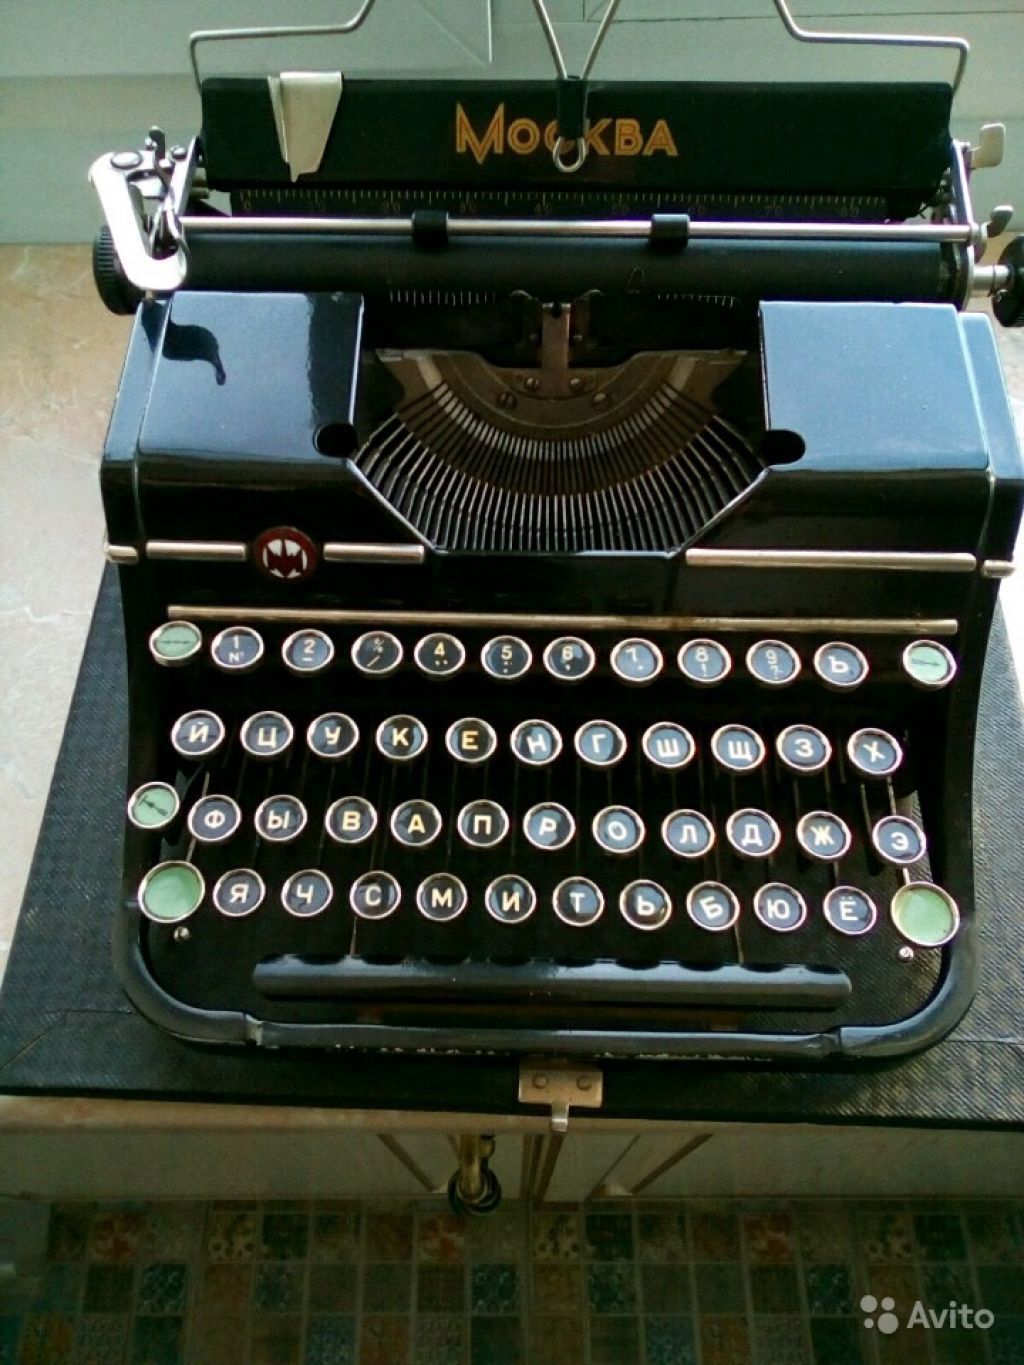 Пишущая машинка Москва, модель 4. Продажа в 1956г в Москве. Фото 1